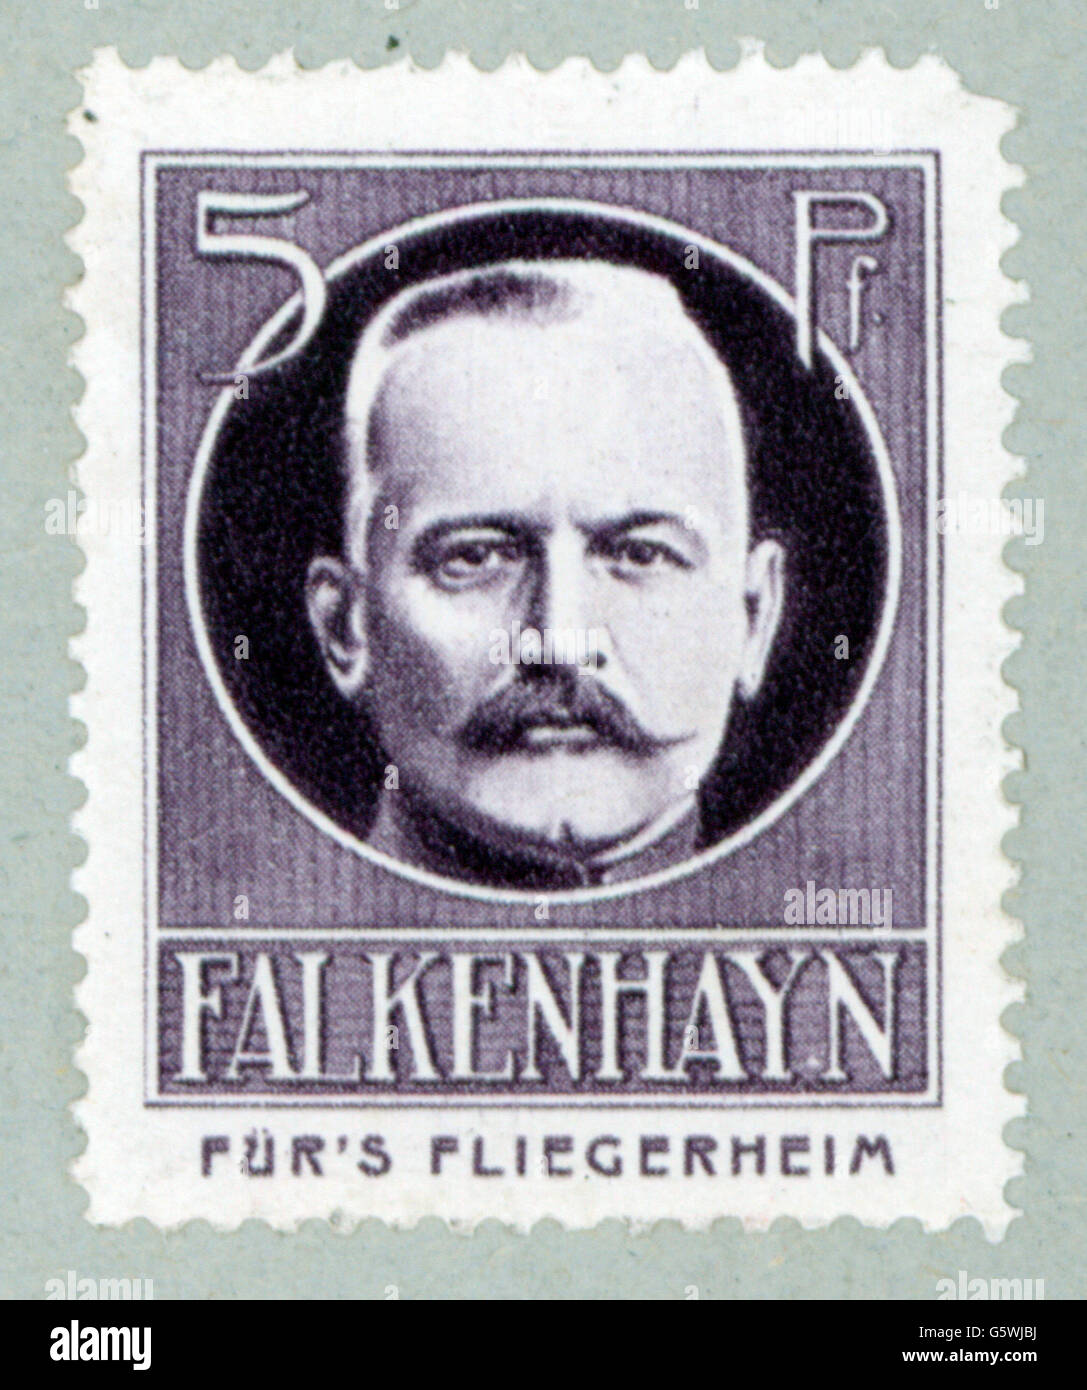 Falkenhayn, Erich von, 11.9.1861 - 8.4.1922, général allemand, portrait, poster Stamp 'Für's Fliegerheim', Allemagne, 1917, Banque D'Images